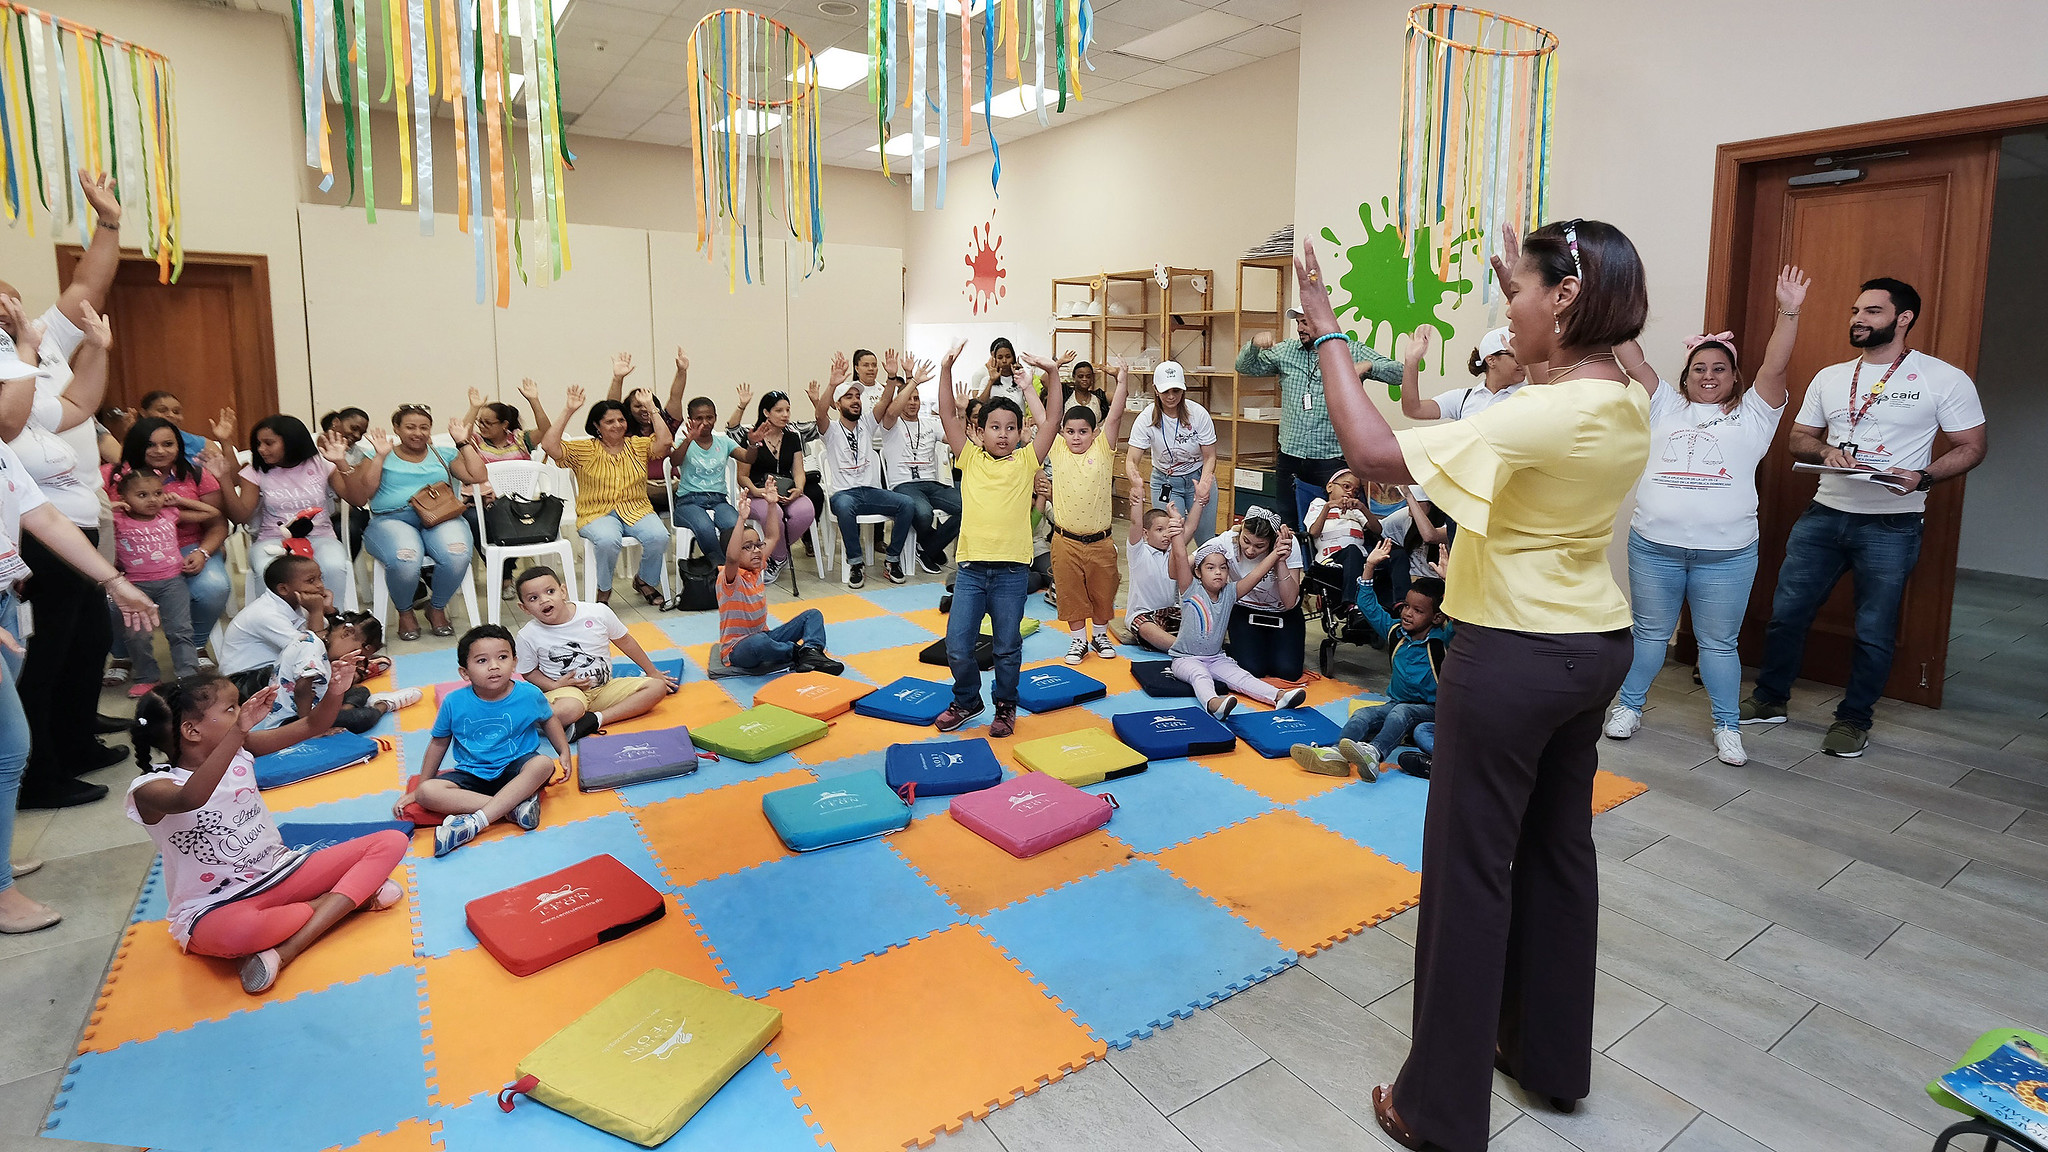 REPÚBLICA DOMINICANA: Con fines terapéuticos, 25 familias de niños y niñas del CAID Santiago disfrutan de una recreativa y cultural Tarde de Museo